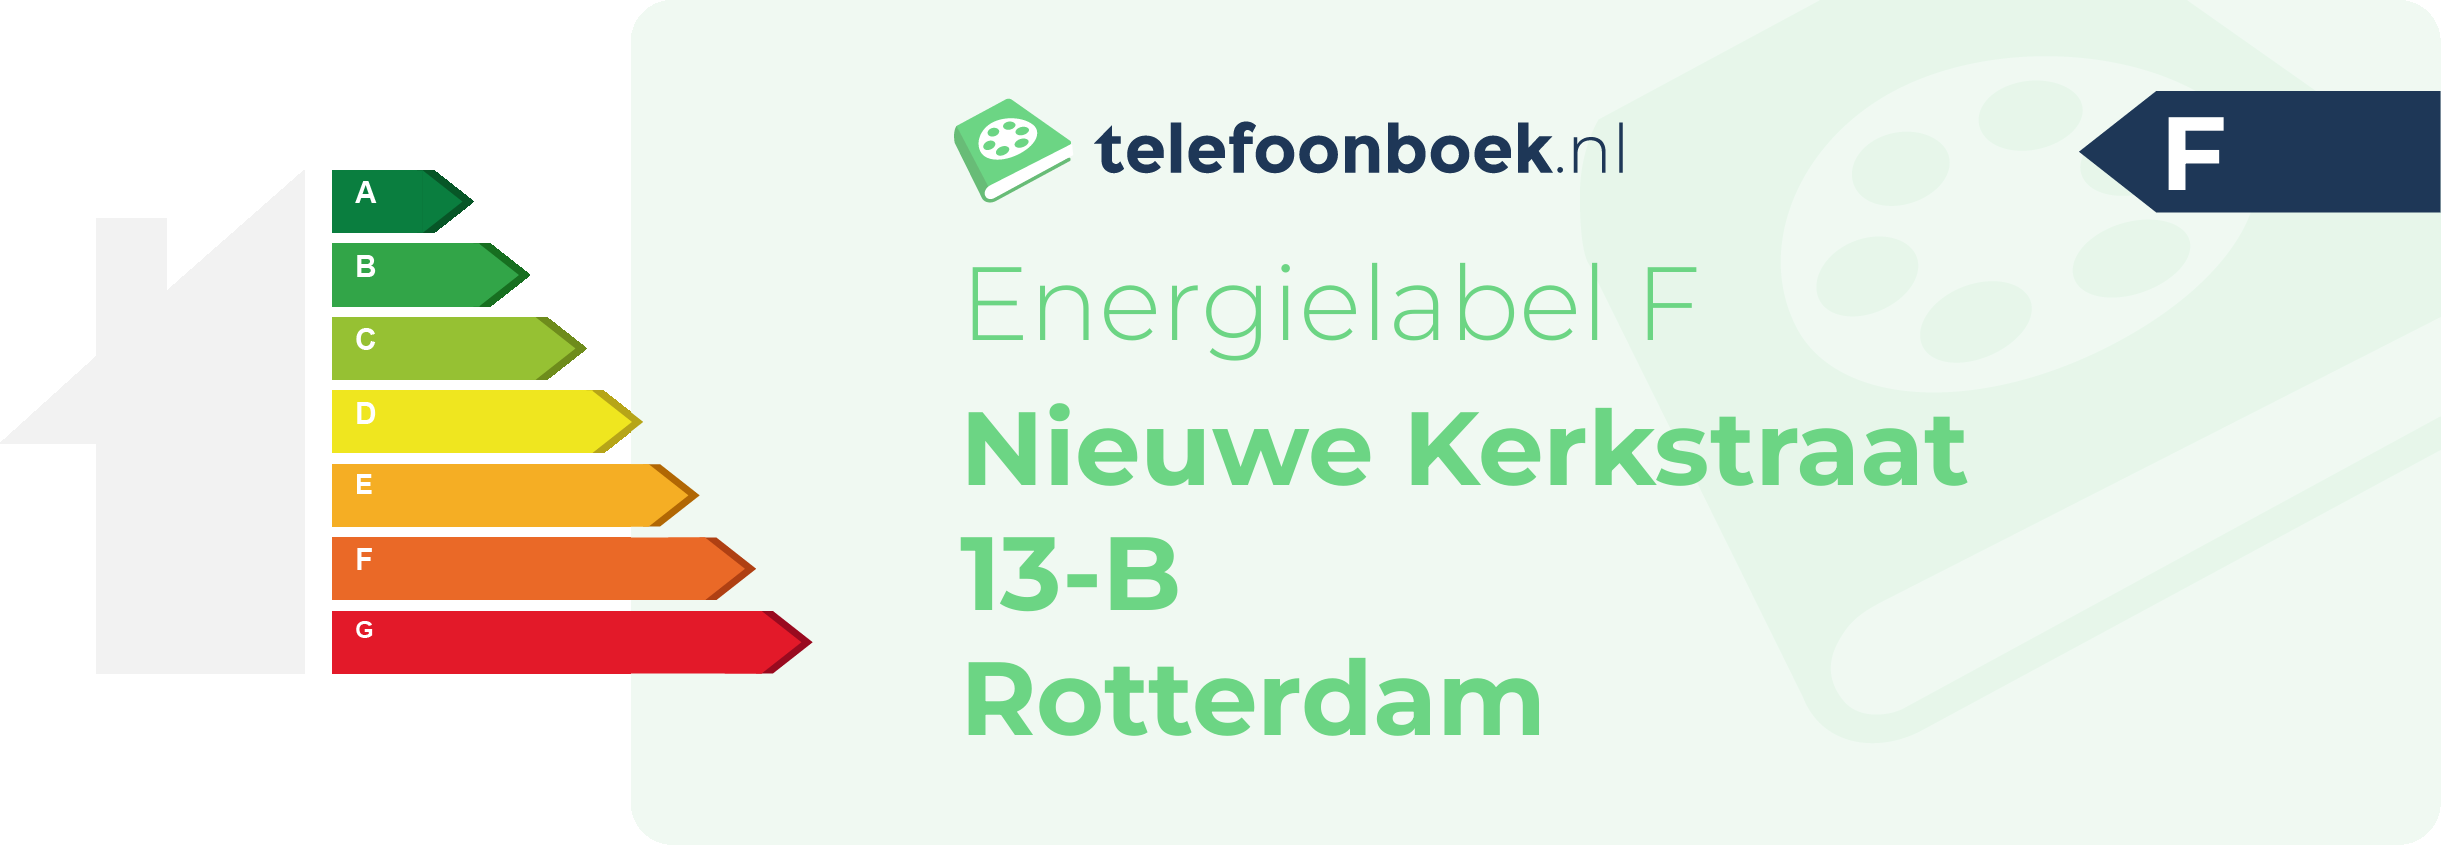 Energielabel Nieuwe Kerkstraat 13-B Rotterdam